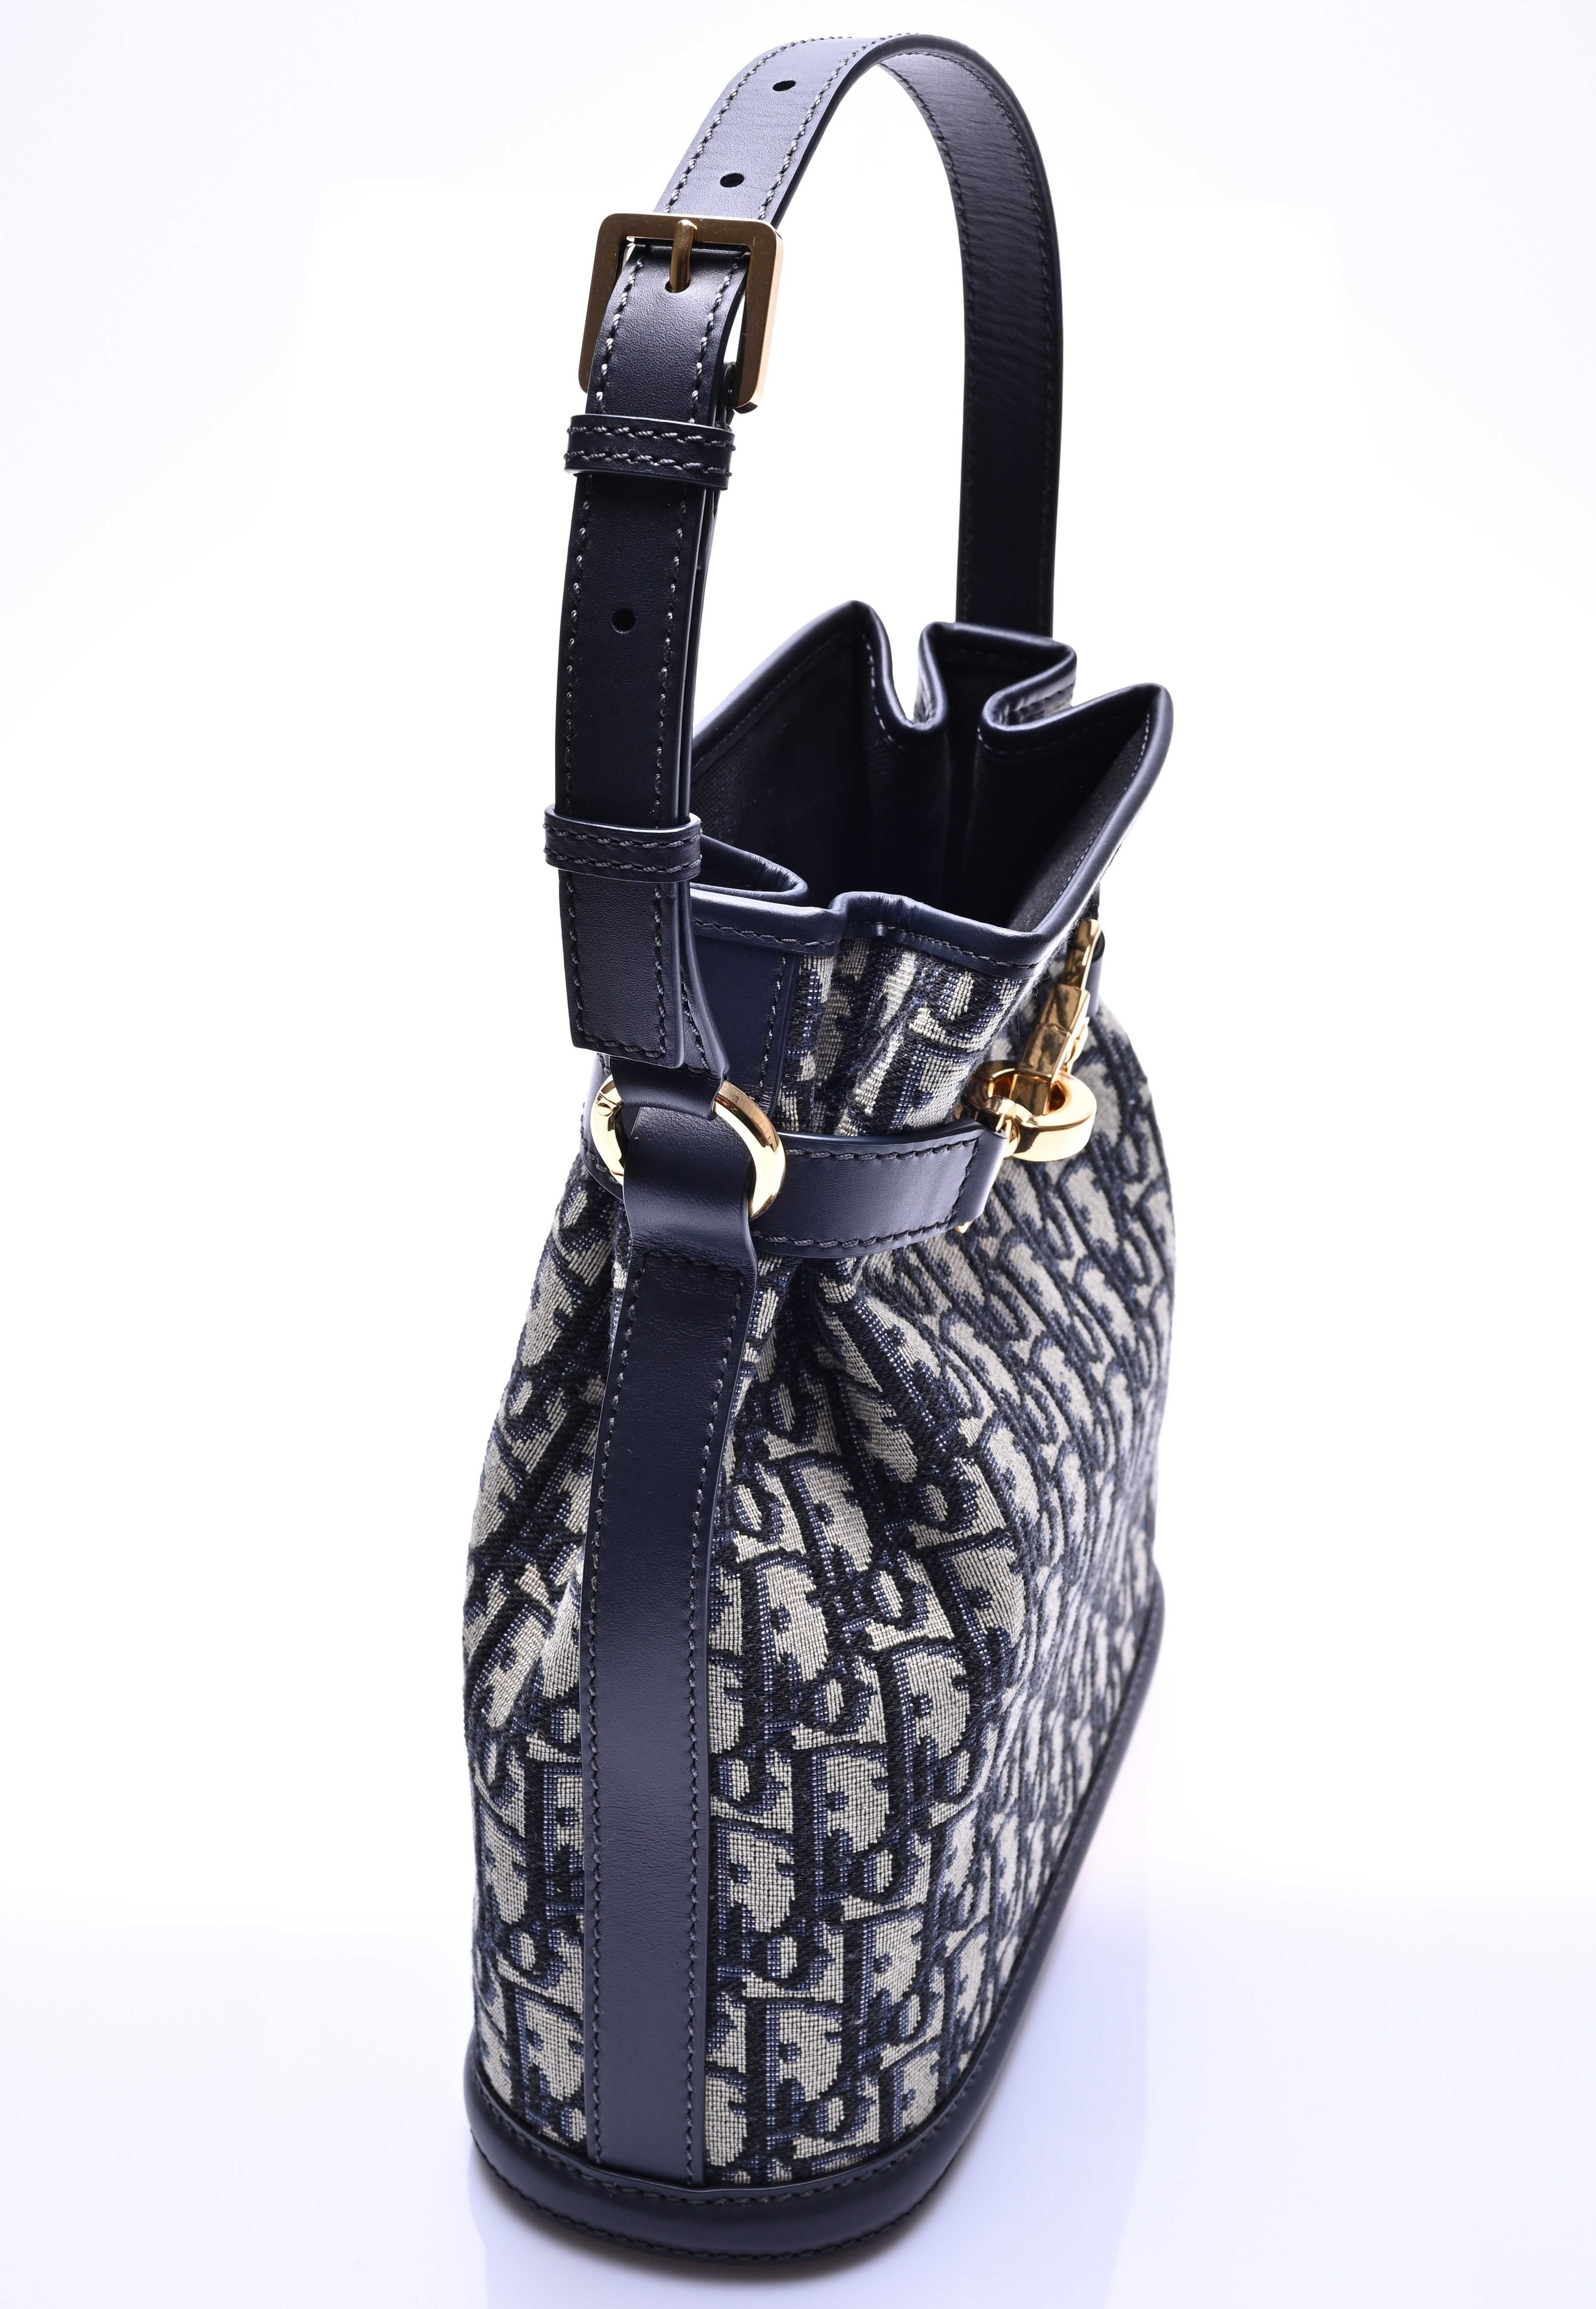 Дамска чанта Christian Dior - Medium C'est Dior